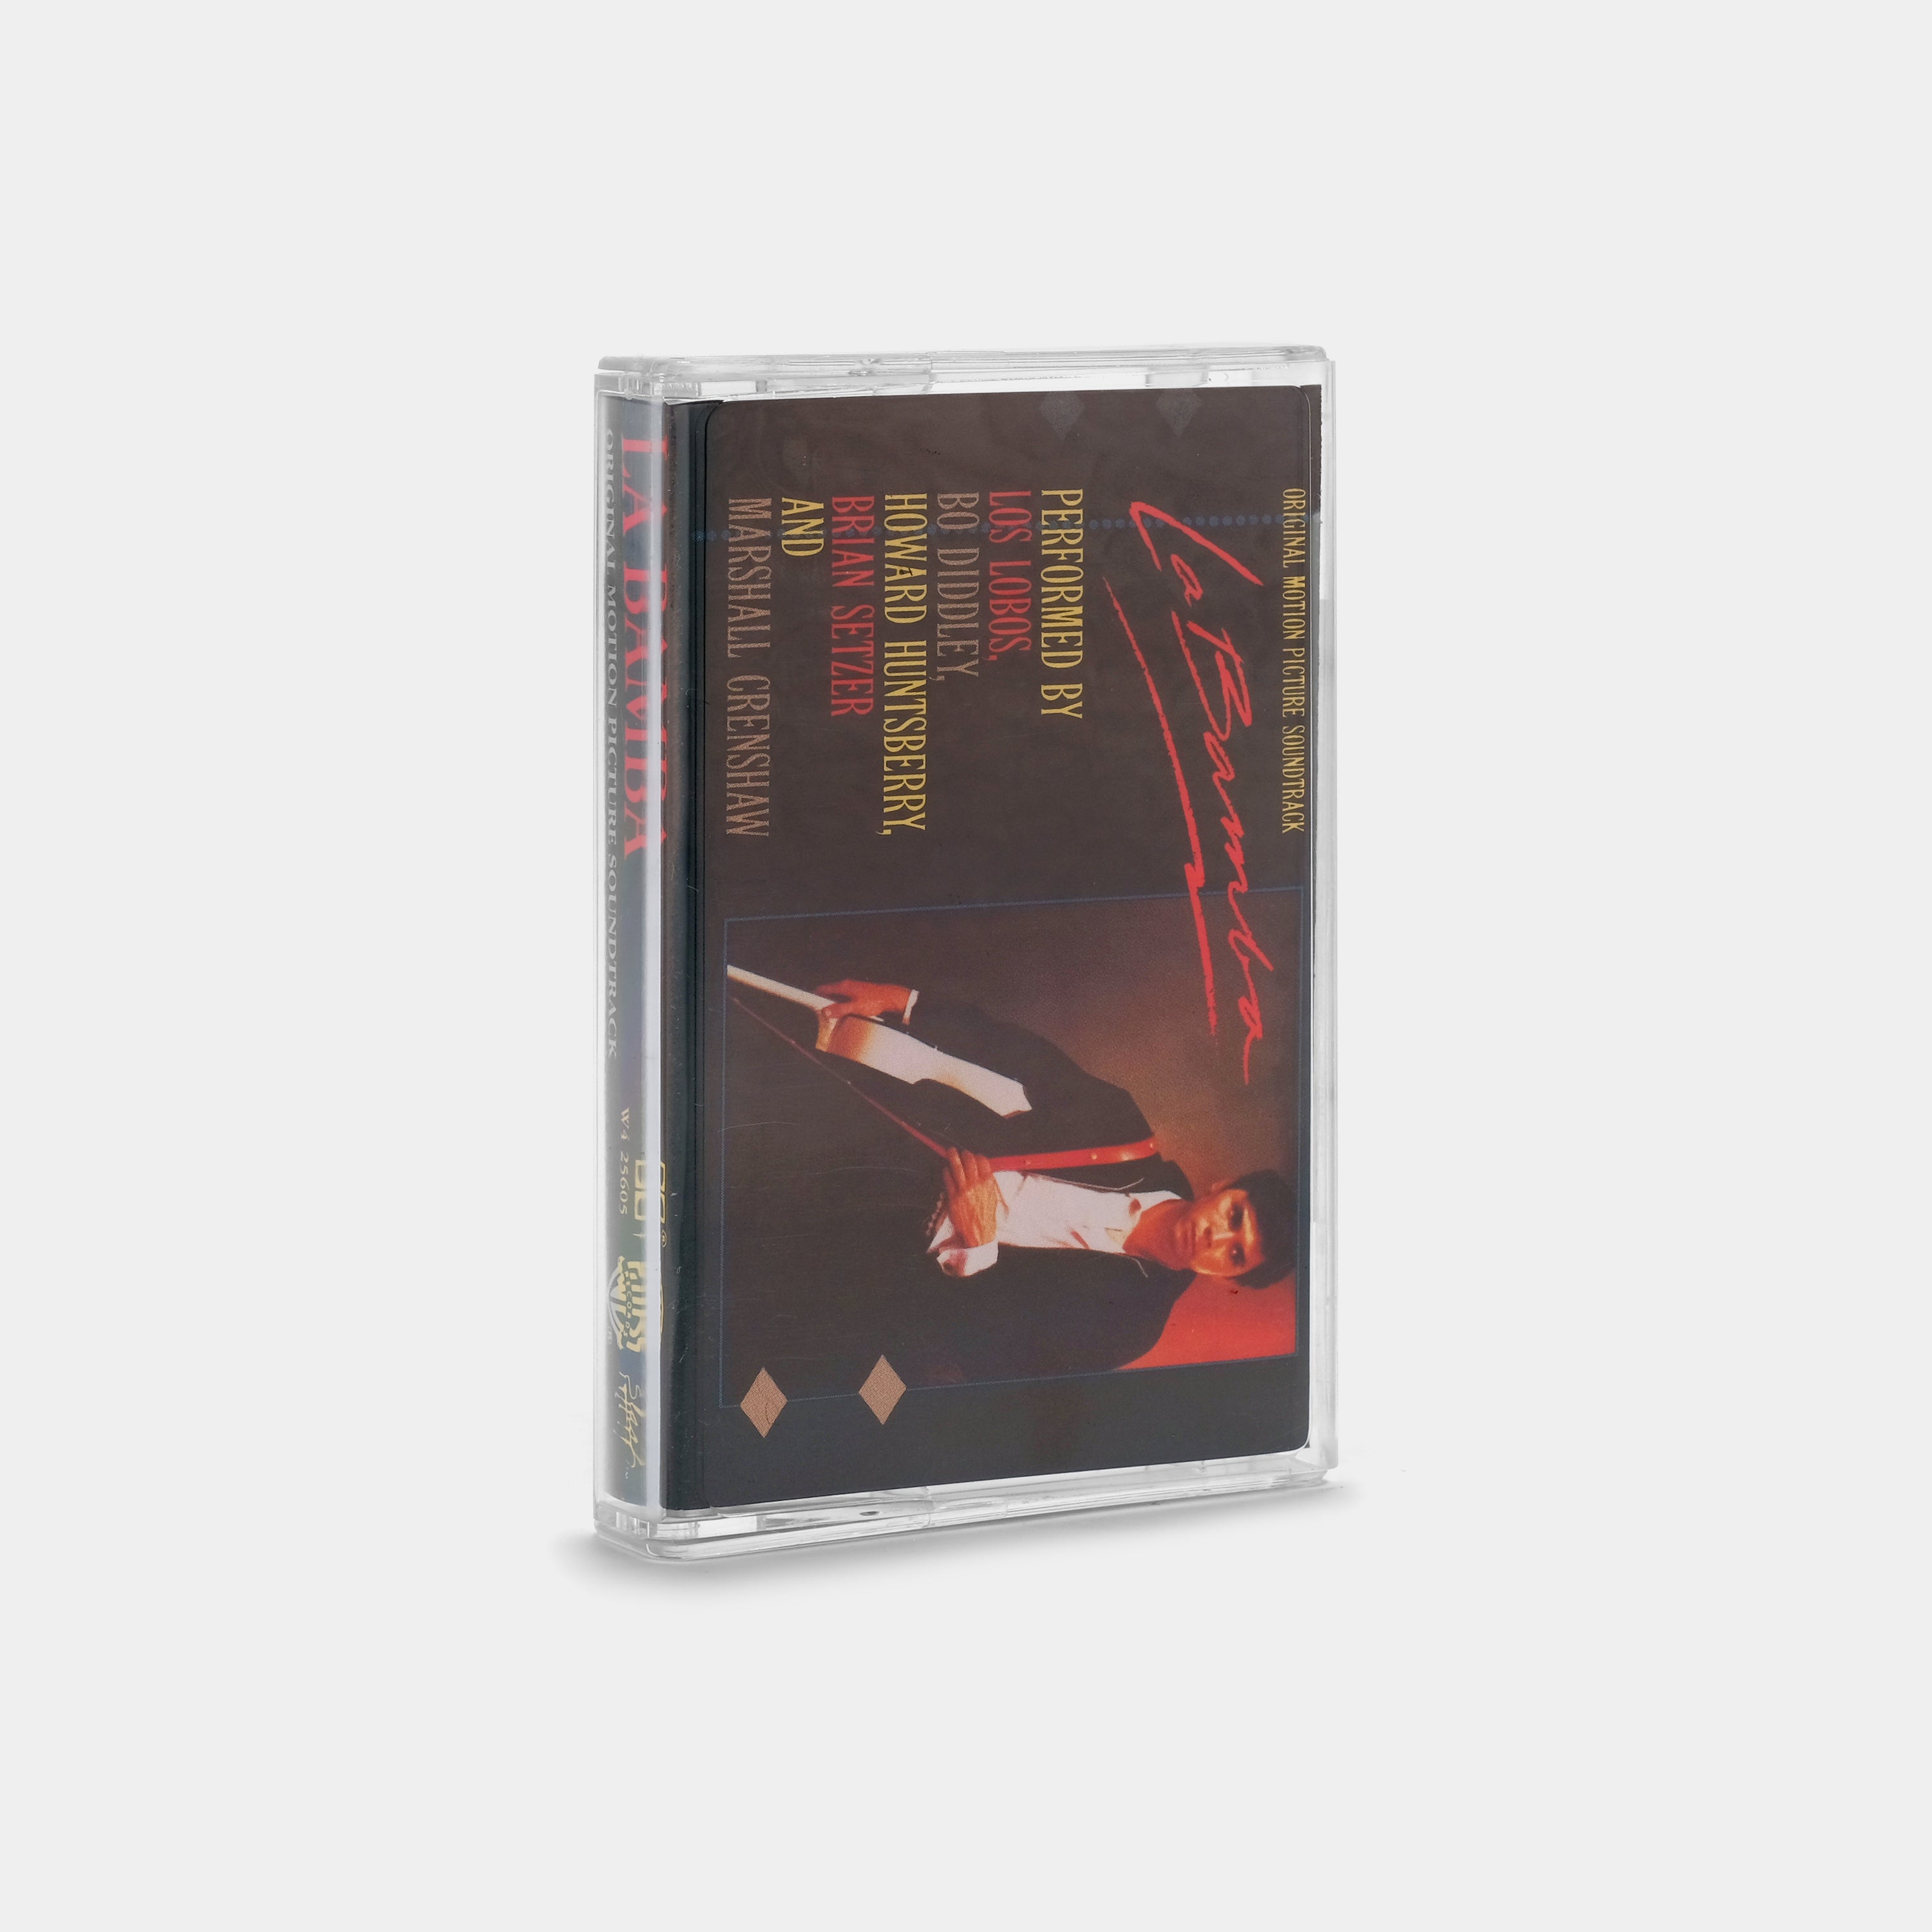 La Bamba (Original Motion Picture Soundtrack) Cassette Tape